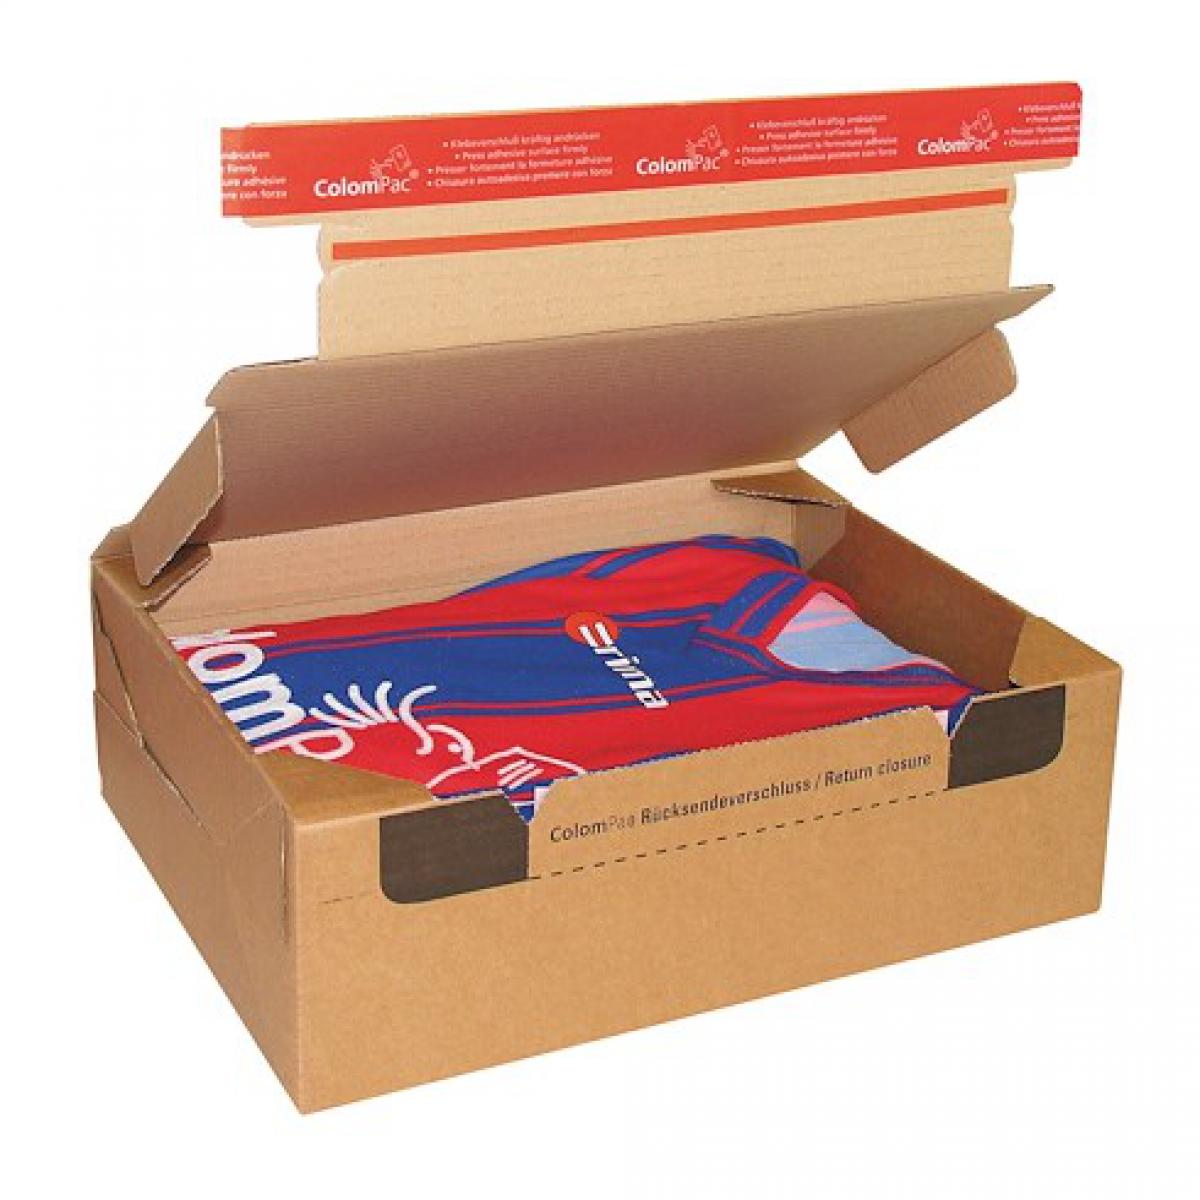 Colompac - Boite postale carton modèle expédition et retour 28,2 x 19,1 x 9 cm - Lot de 10 - Accessoires Bureau